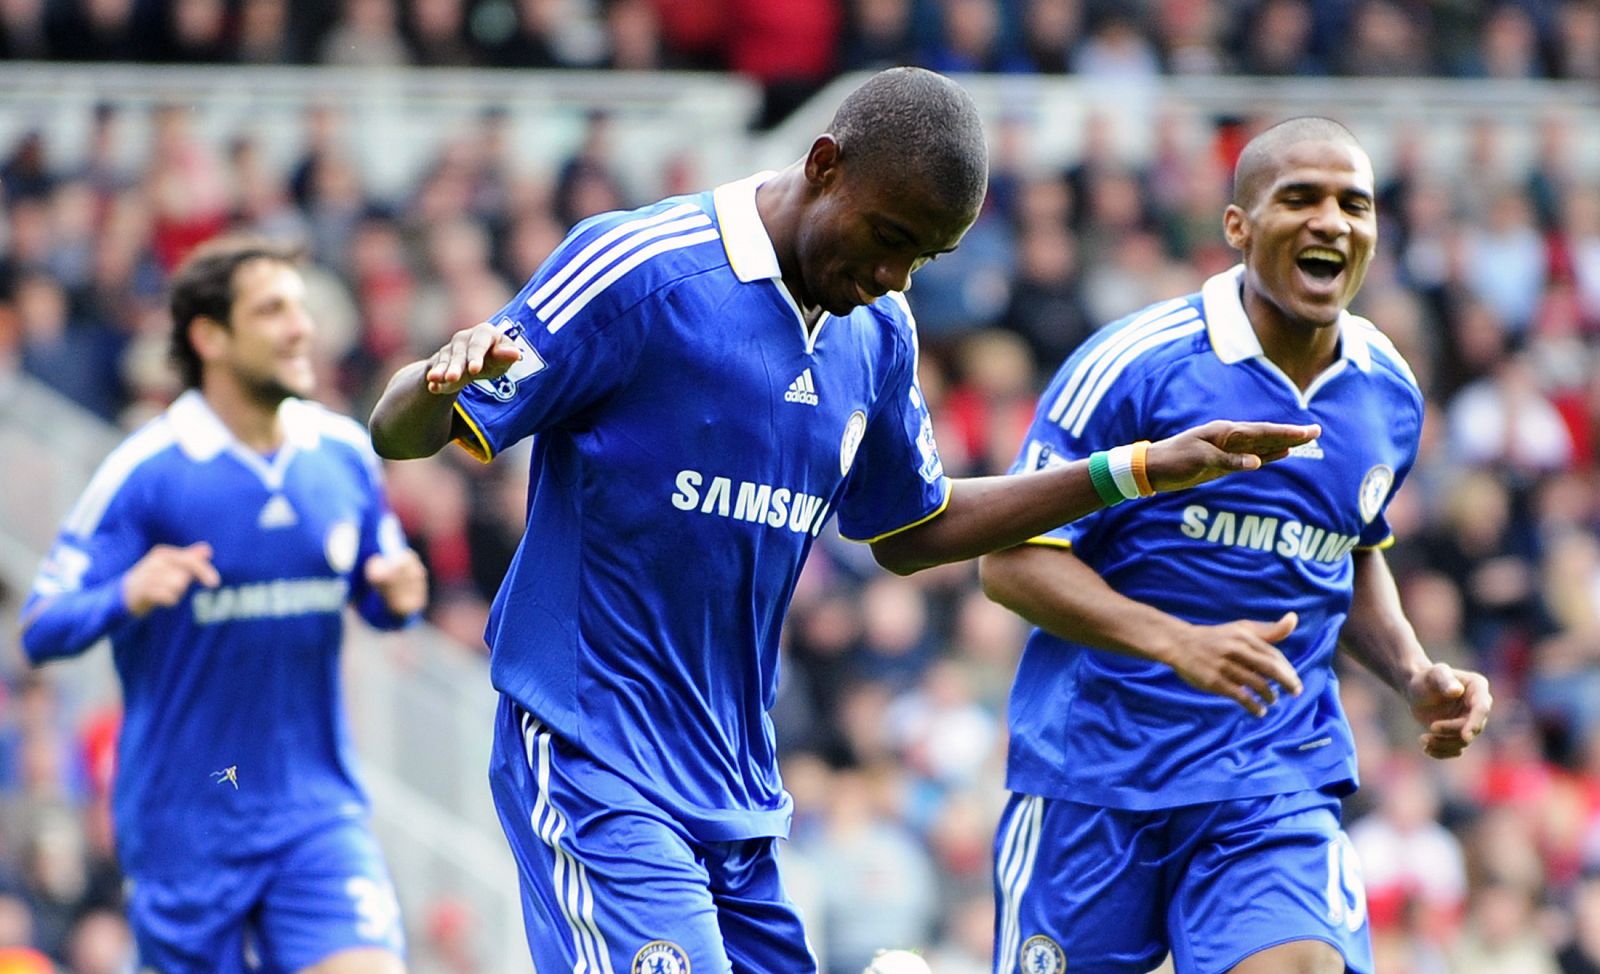 El jugador del Chelsea, Kalou, celebra el gol marcado ante el Middlesbrough, en la Premier Leage inglesa.